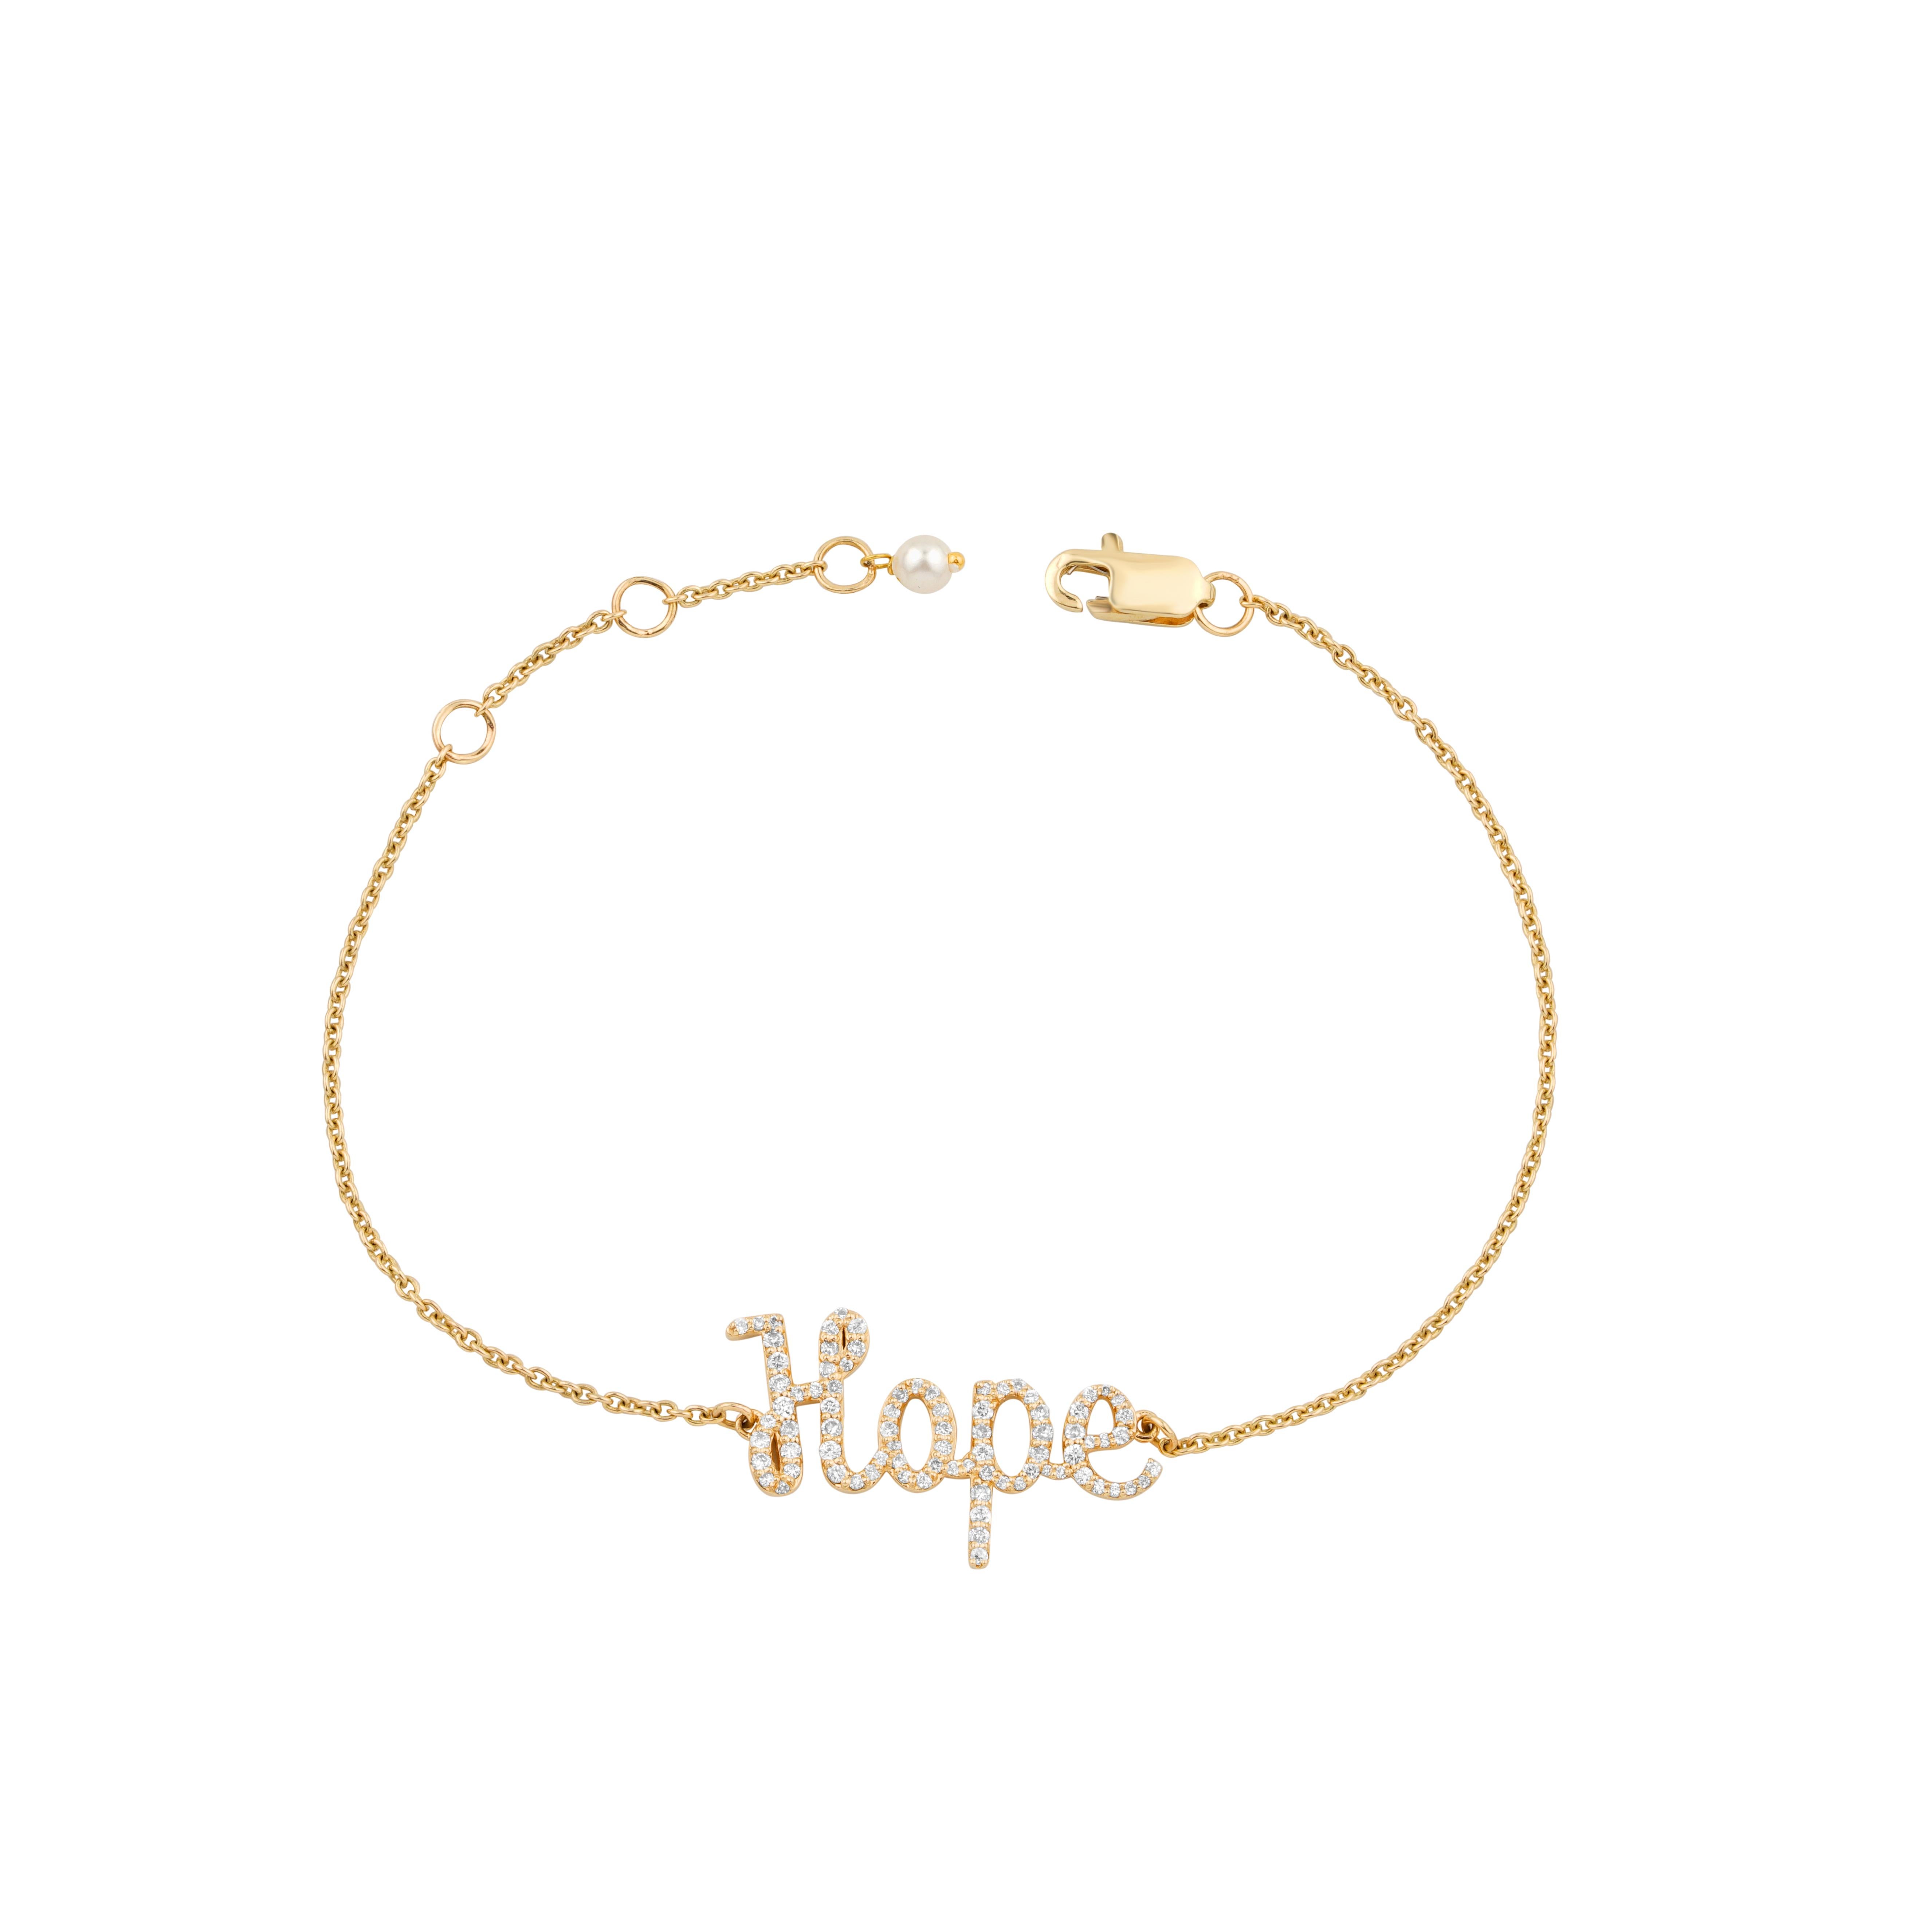 Le Diamond Hope Charm Bracelet est un bracelet délicat avec le mot 